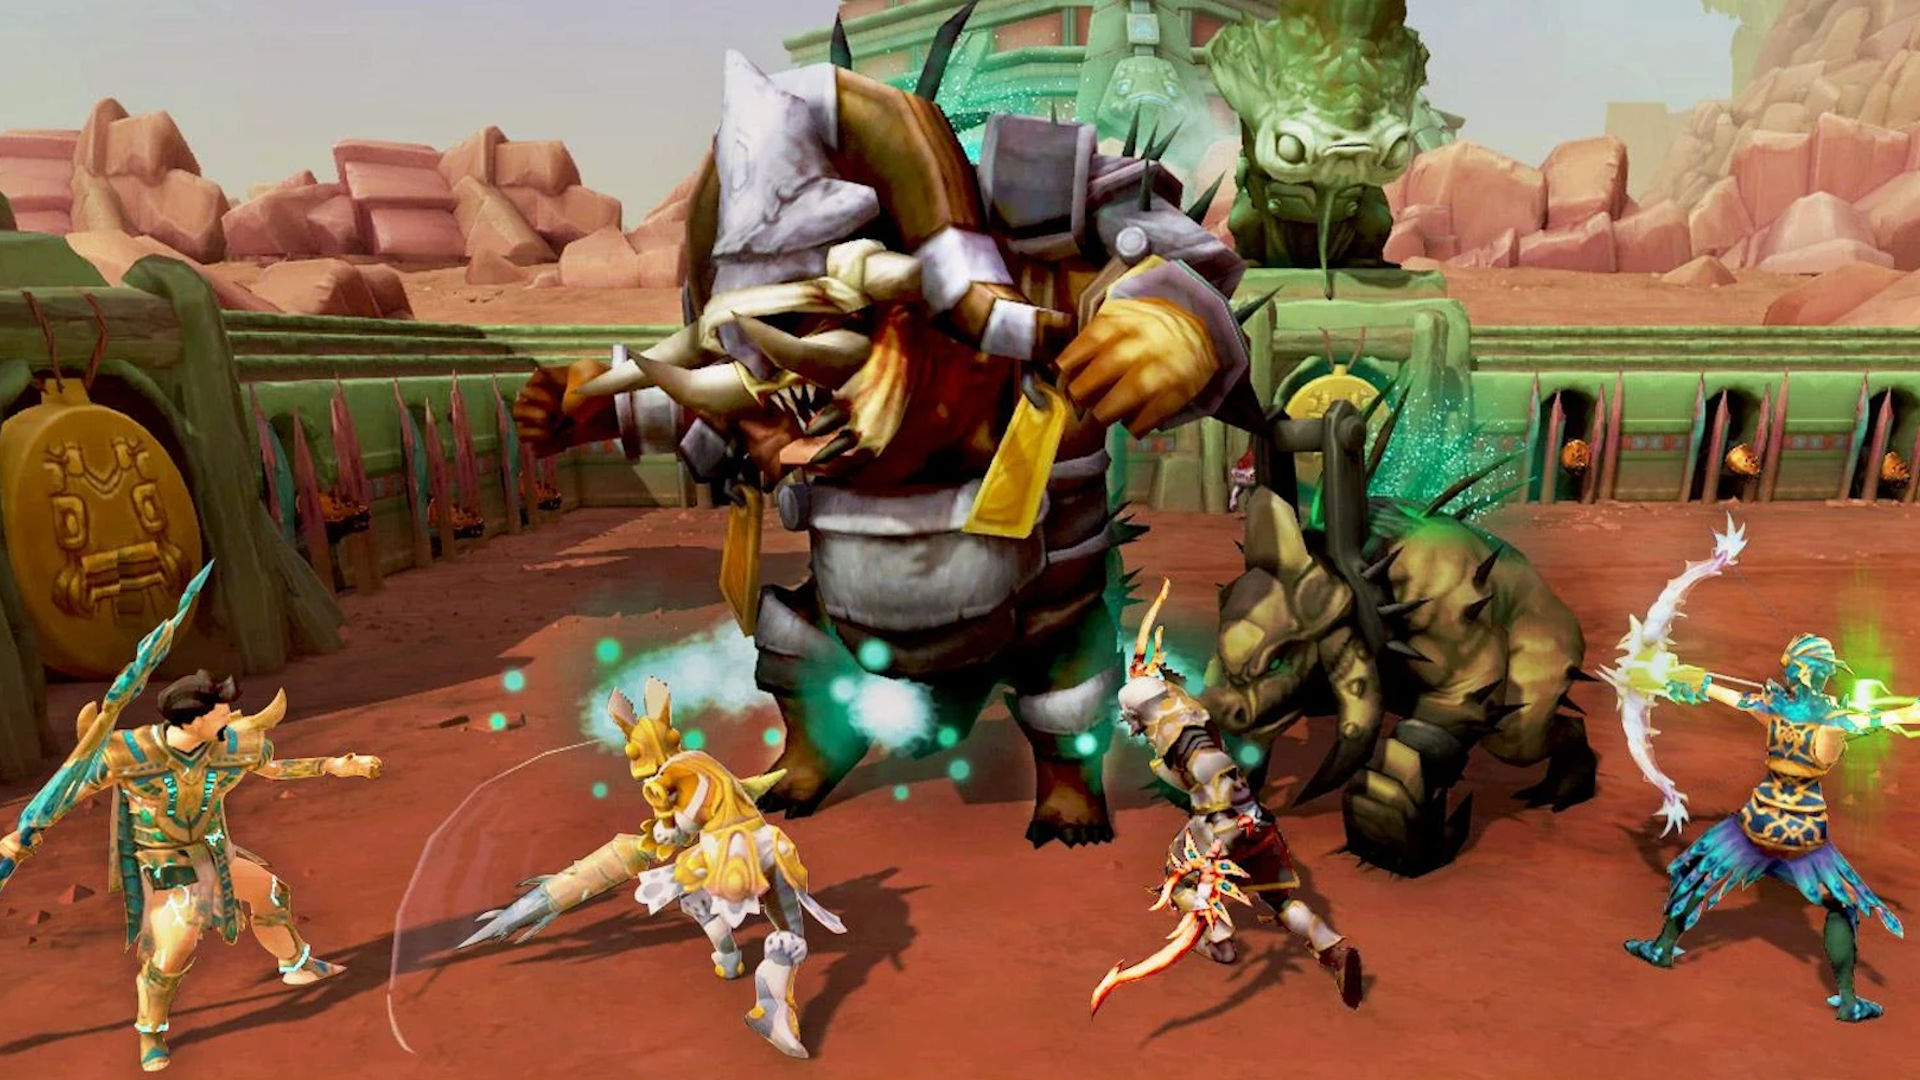 أفضل MMORPGs Mobile: Runescape Mobile. تُظهر الصورة جزءًا من أربعة مقاتلين يخوضون معركة مع وحش شبيه بـ Ogre